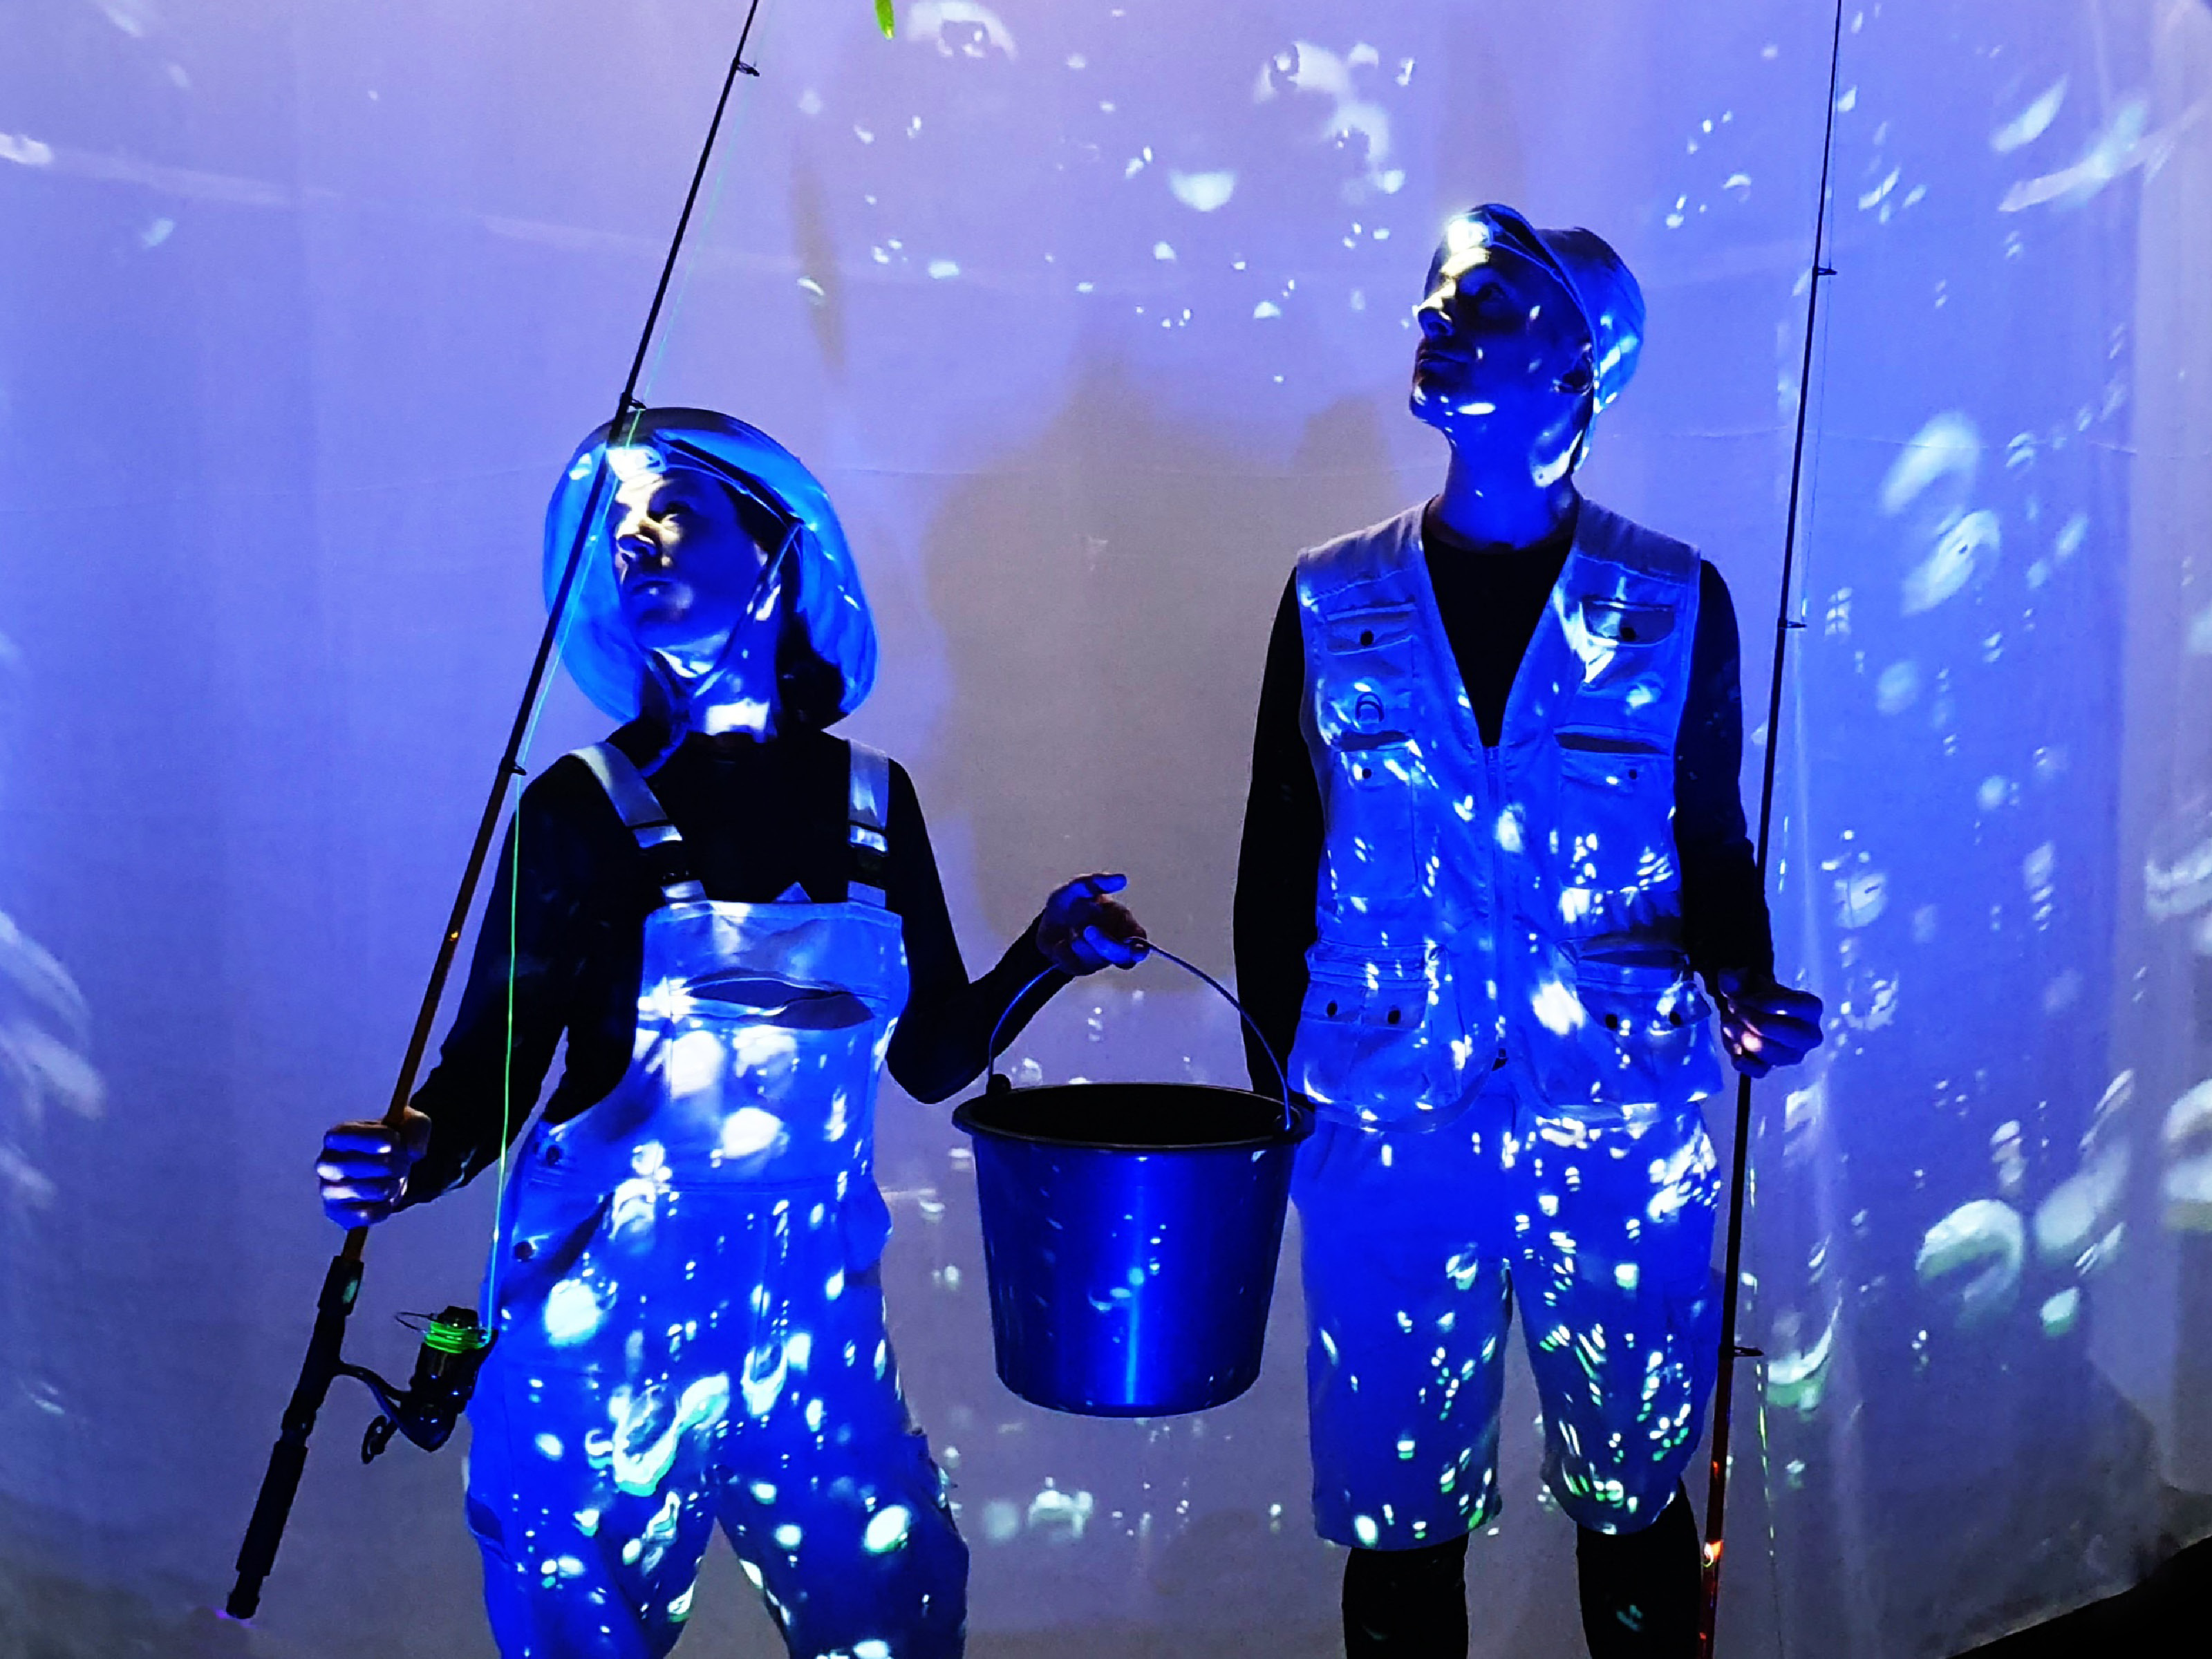 Zwei Menschen in Angleroutfits stehen vor einer blau beleuchteten Leinwand mit Blubberblasen und halten zwei Angelruten und einen Metalleimer in den Händen.